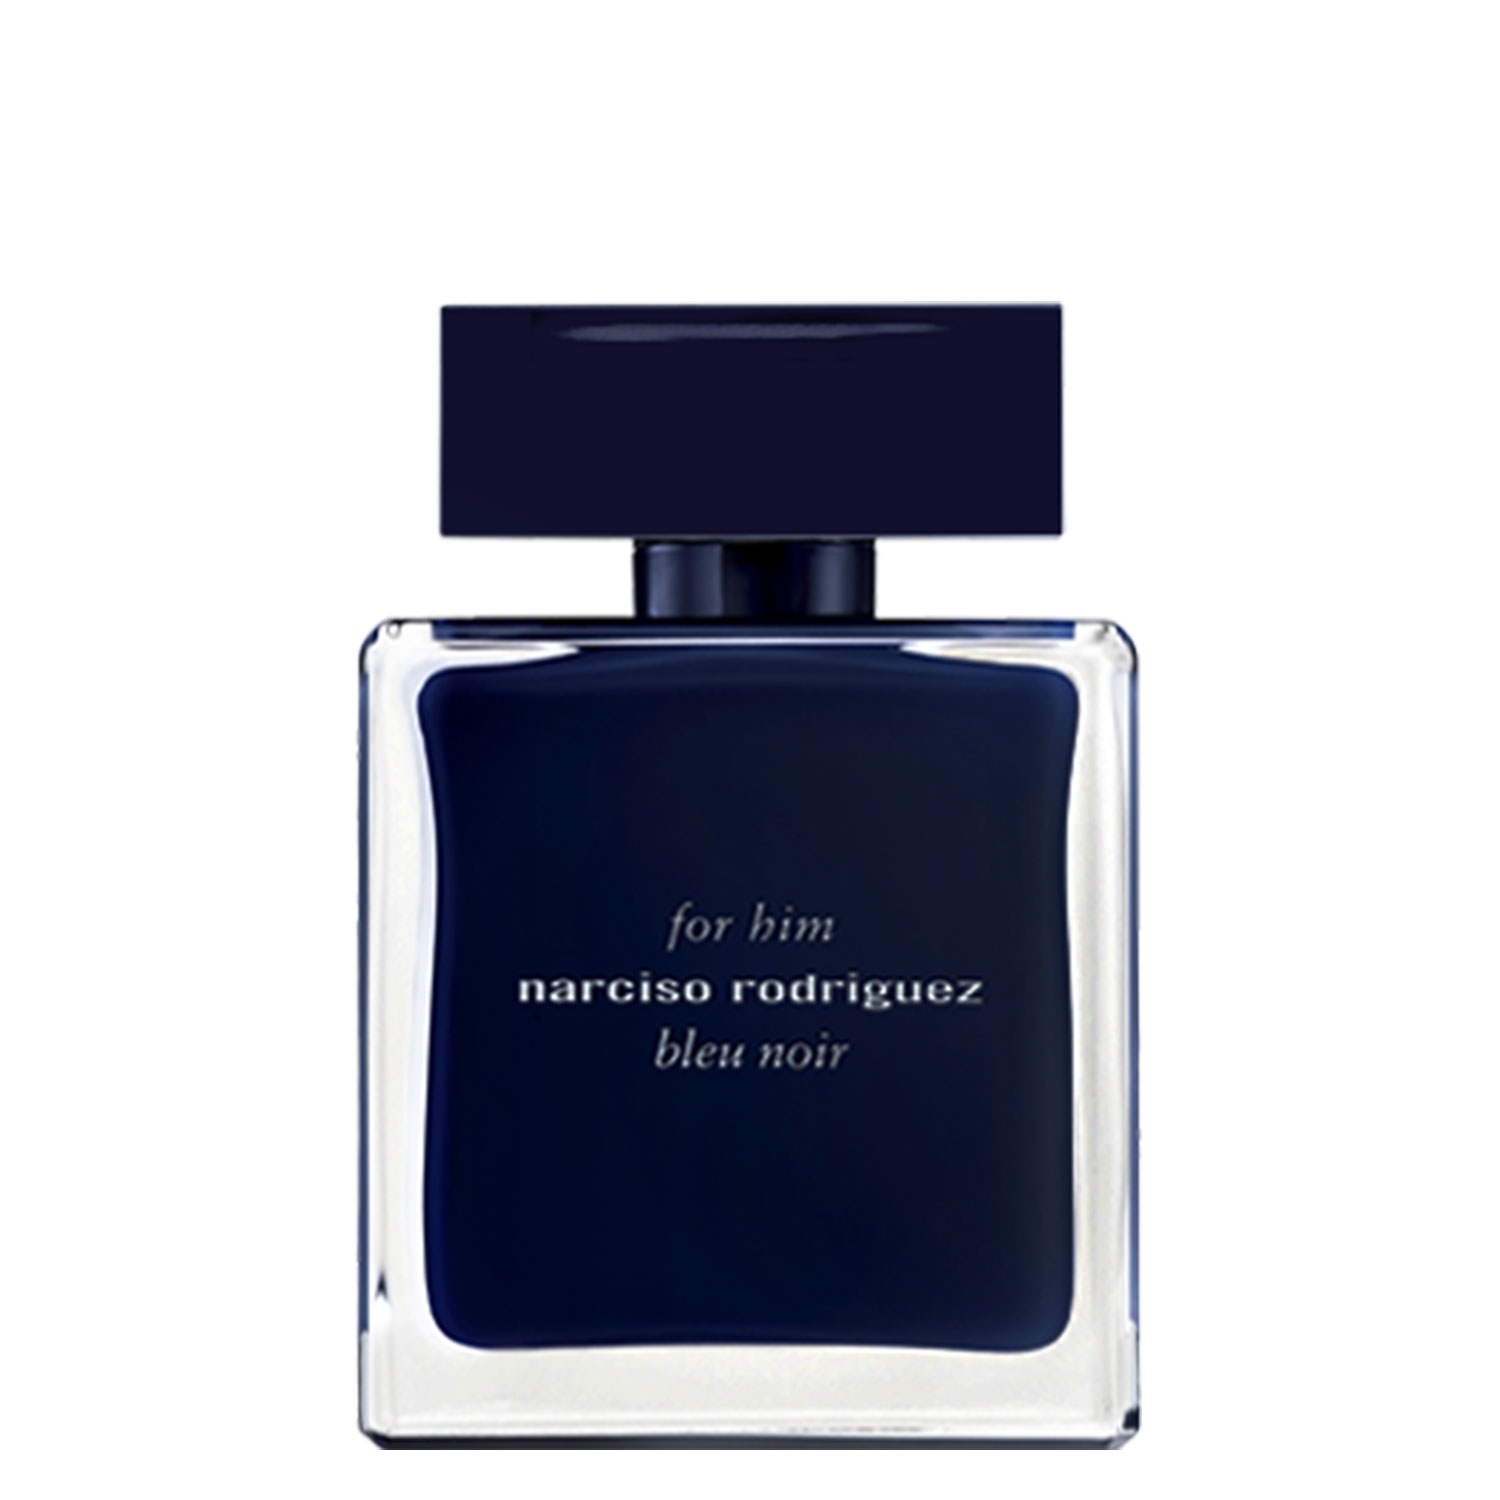 Produktbild von Narciso - For Him Bleu Noir Eau de Toilette